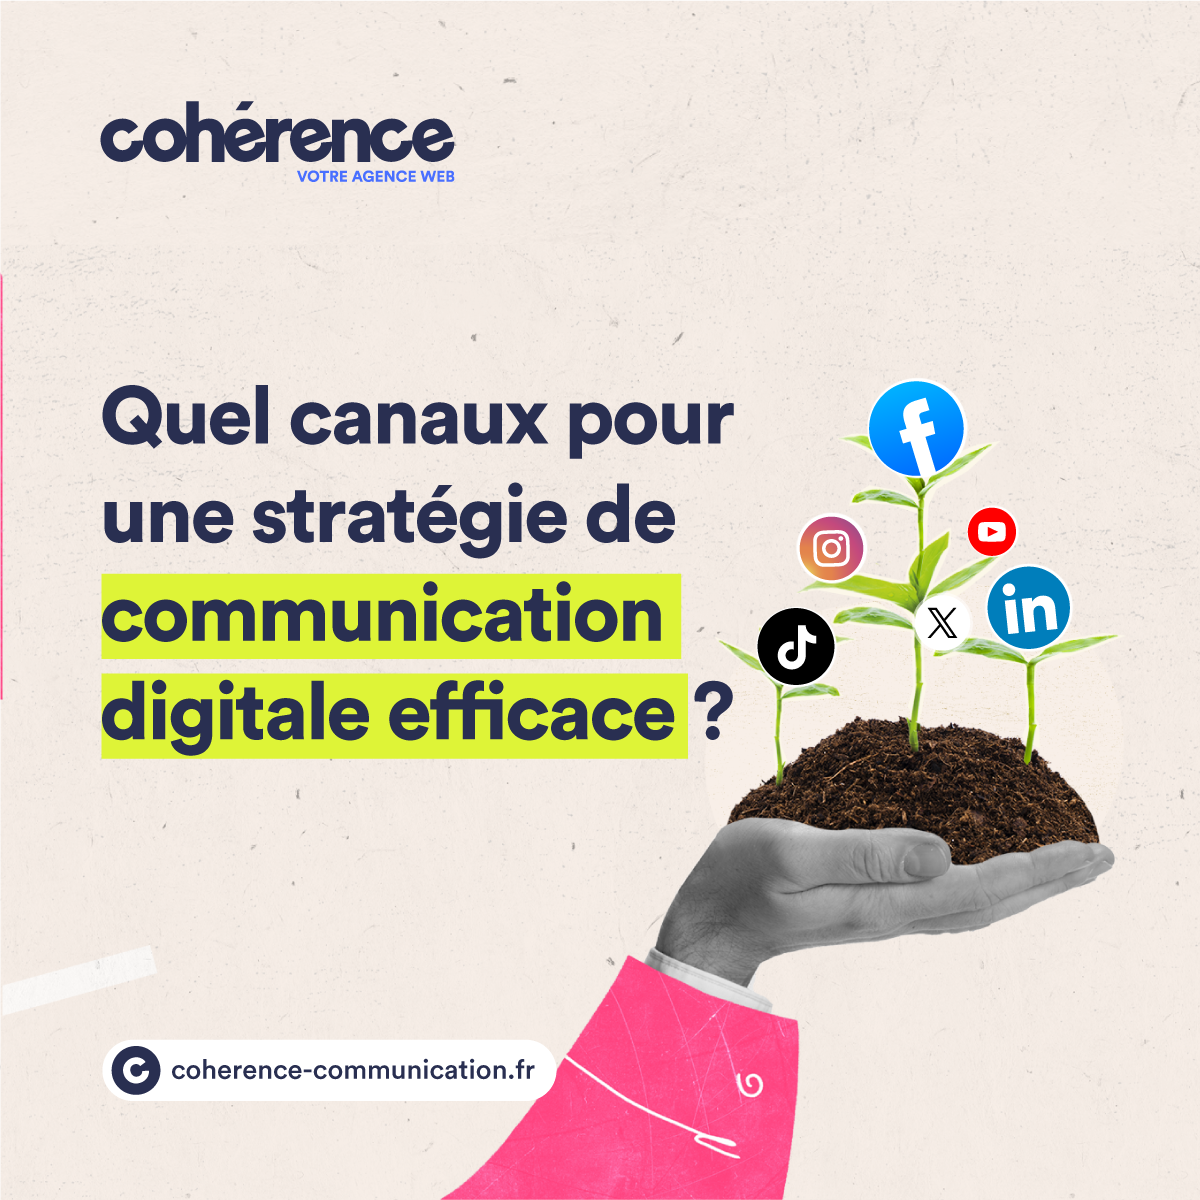 Coherence Agence Web Quels Canaux Pour Une Strategie De Communication Digitale